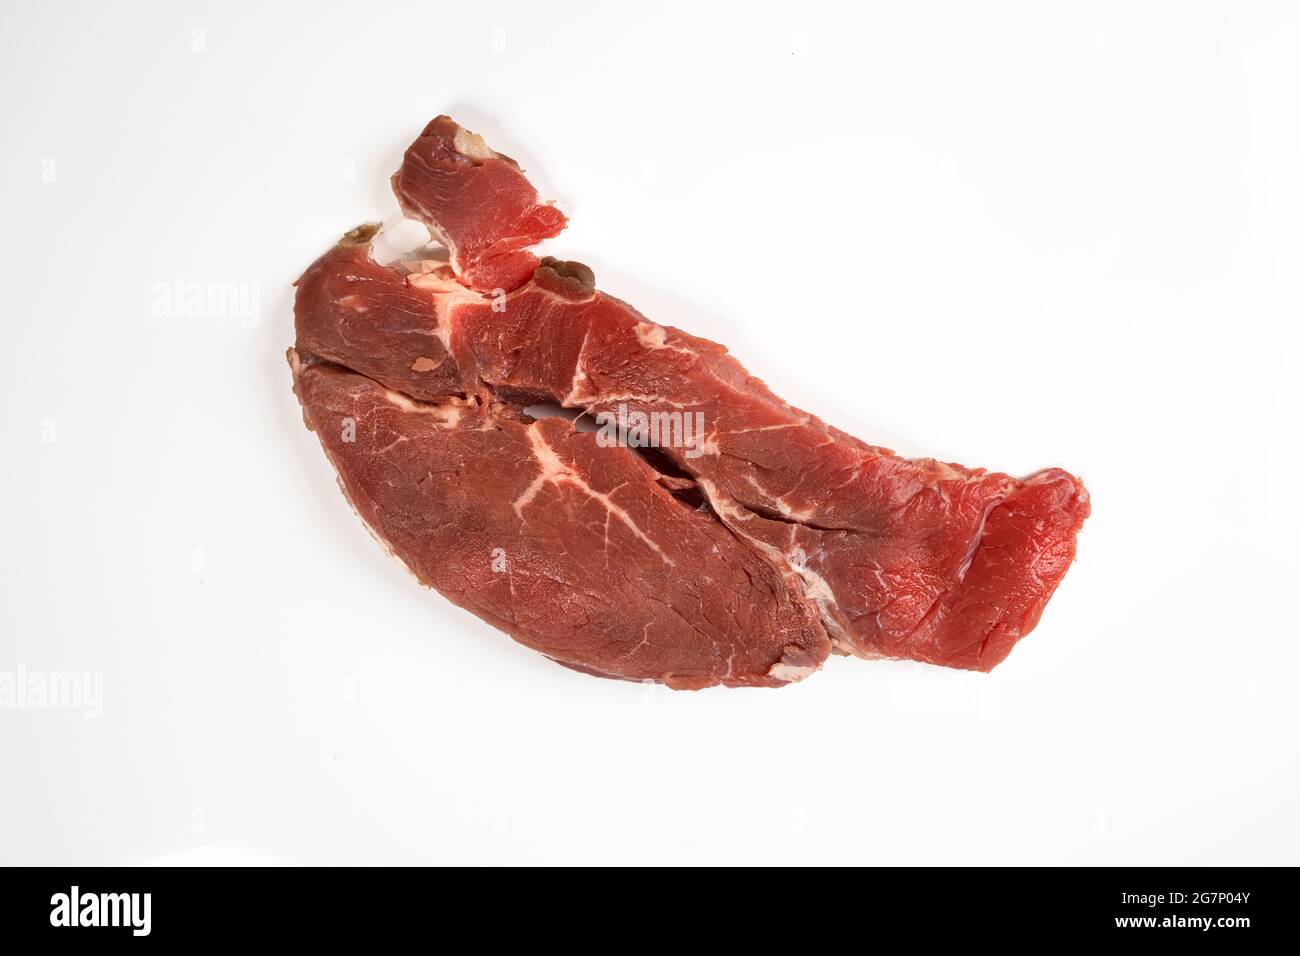 Ein Roastbeef Steak isoliert auf einer weißen Oberfläche Stockfoto